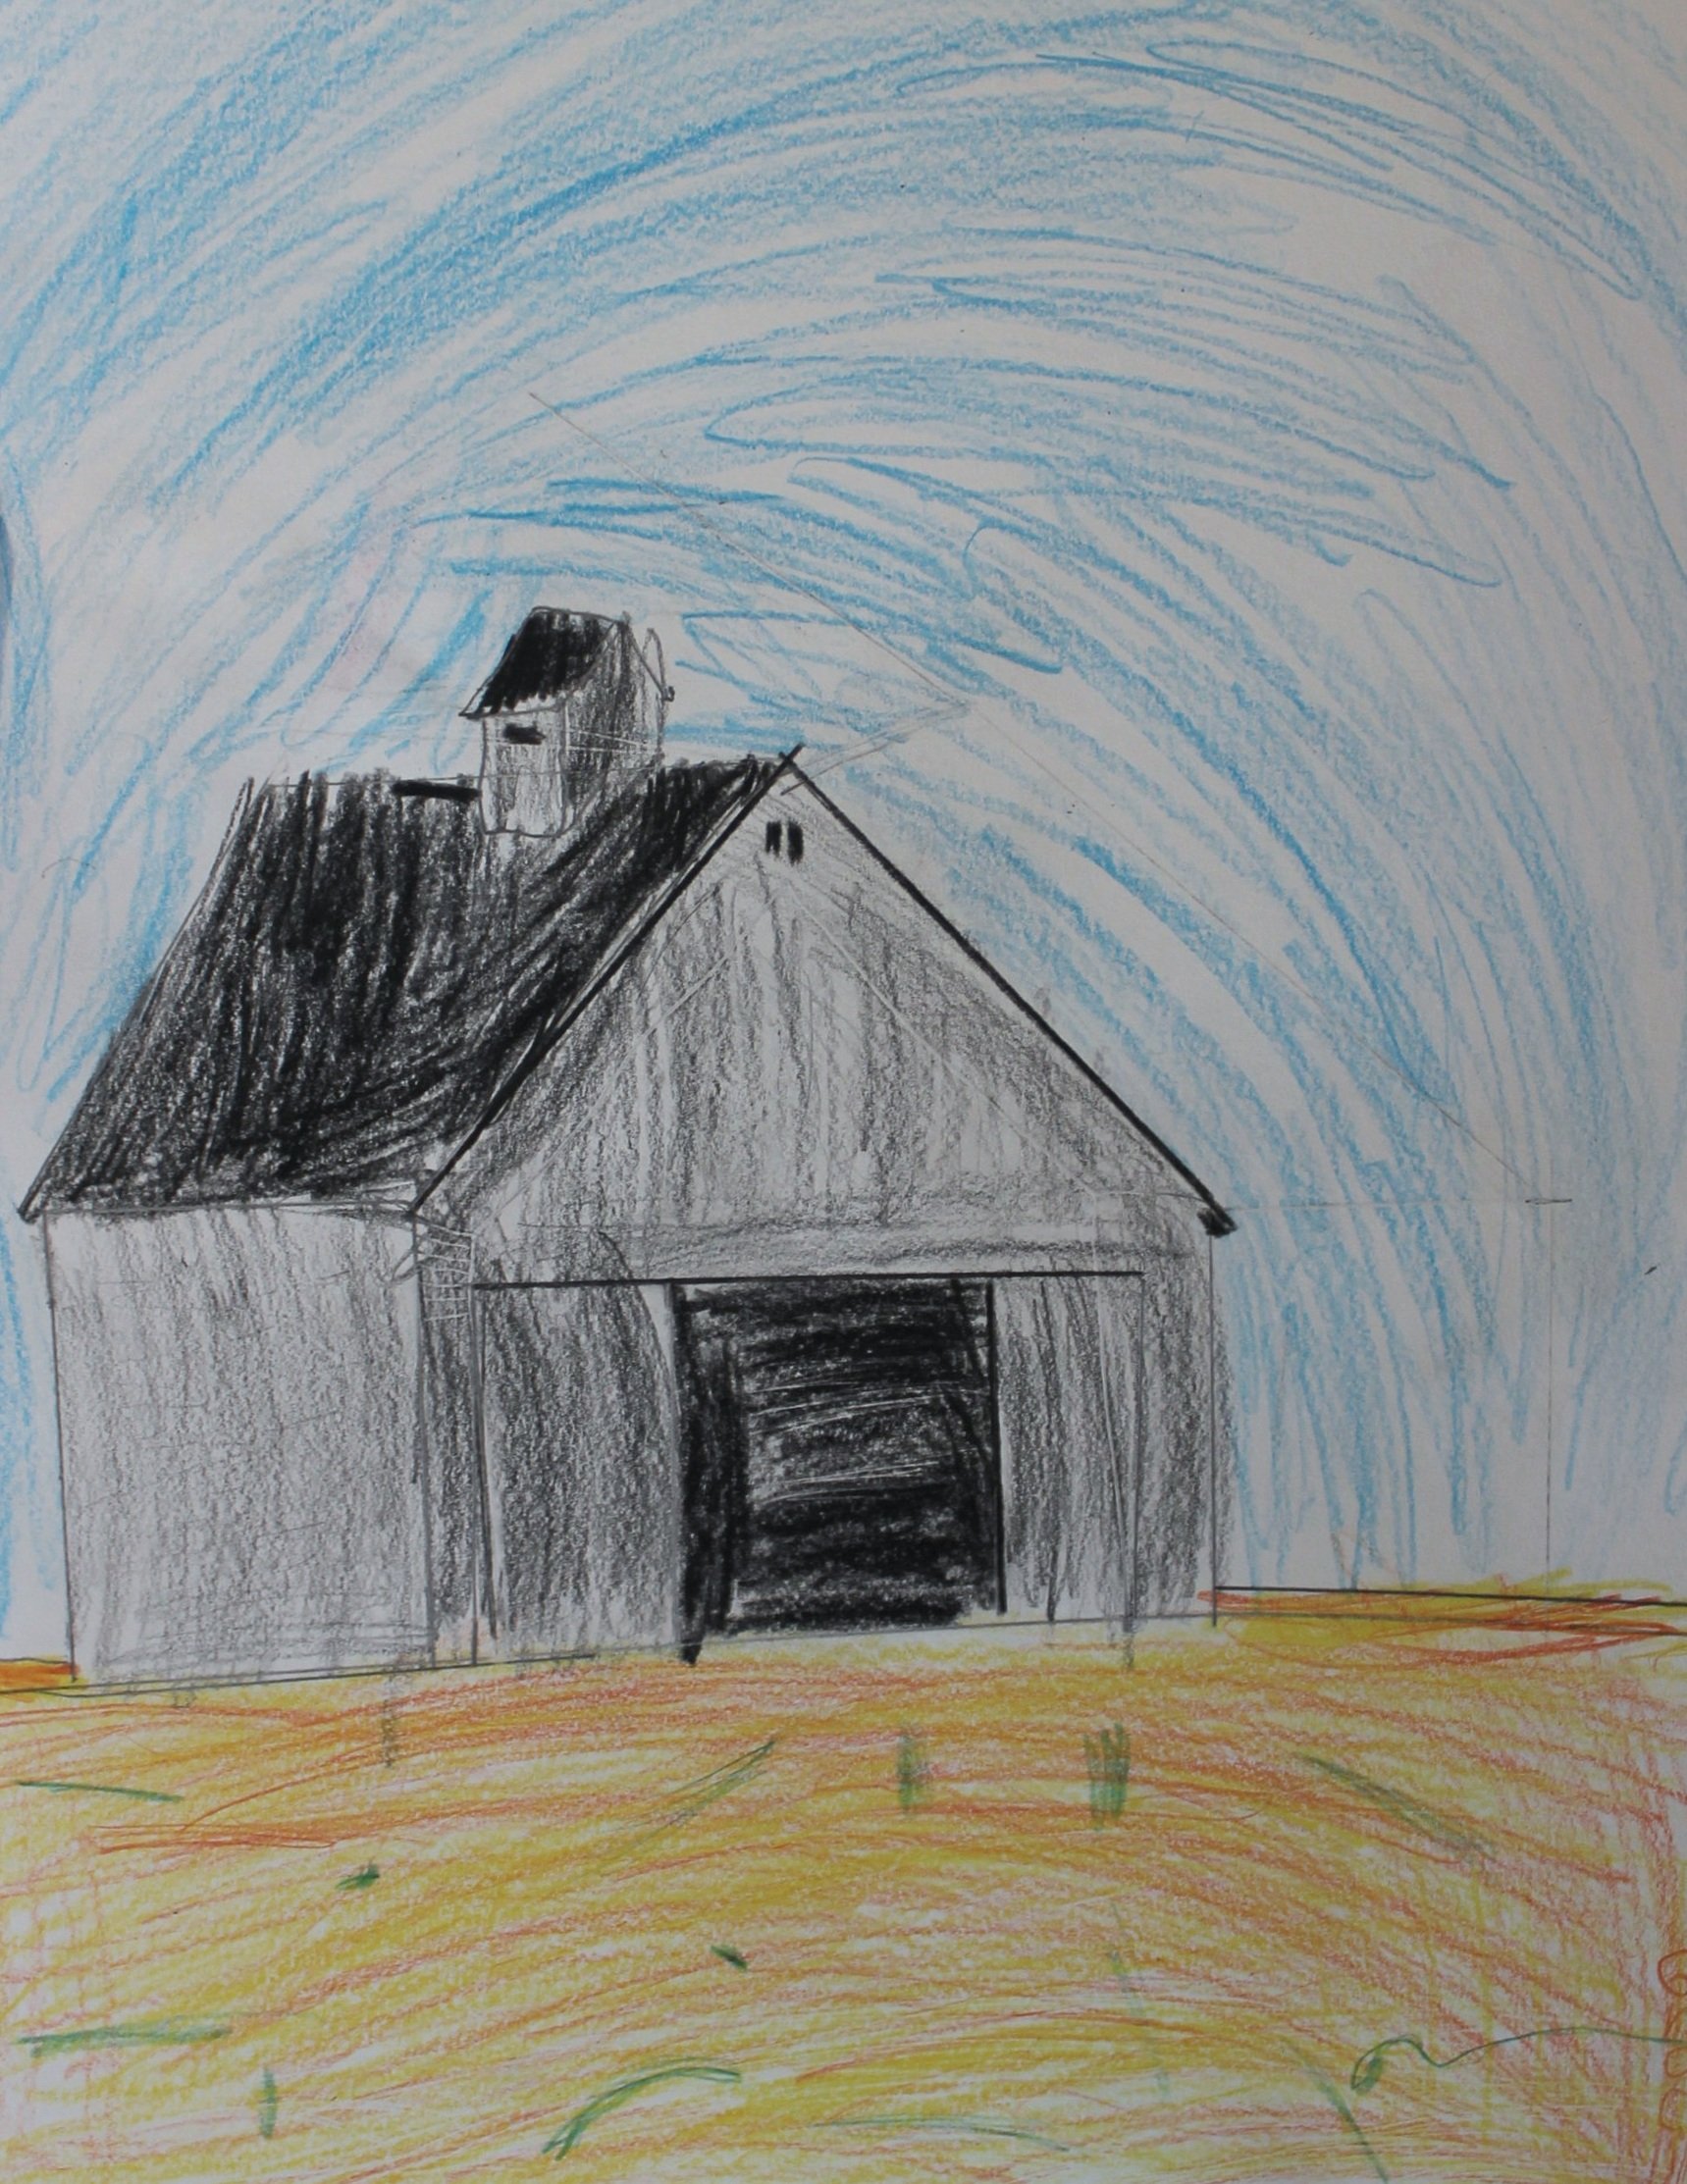 G.G., age 8, colored pencil